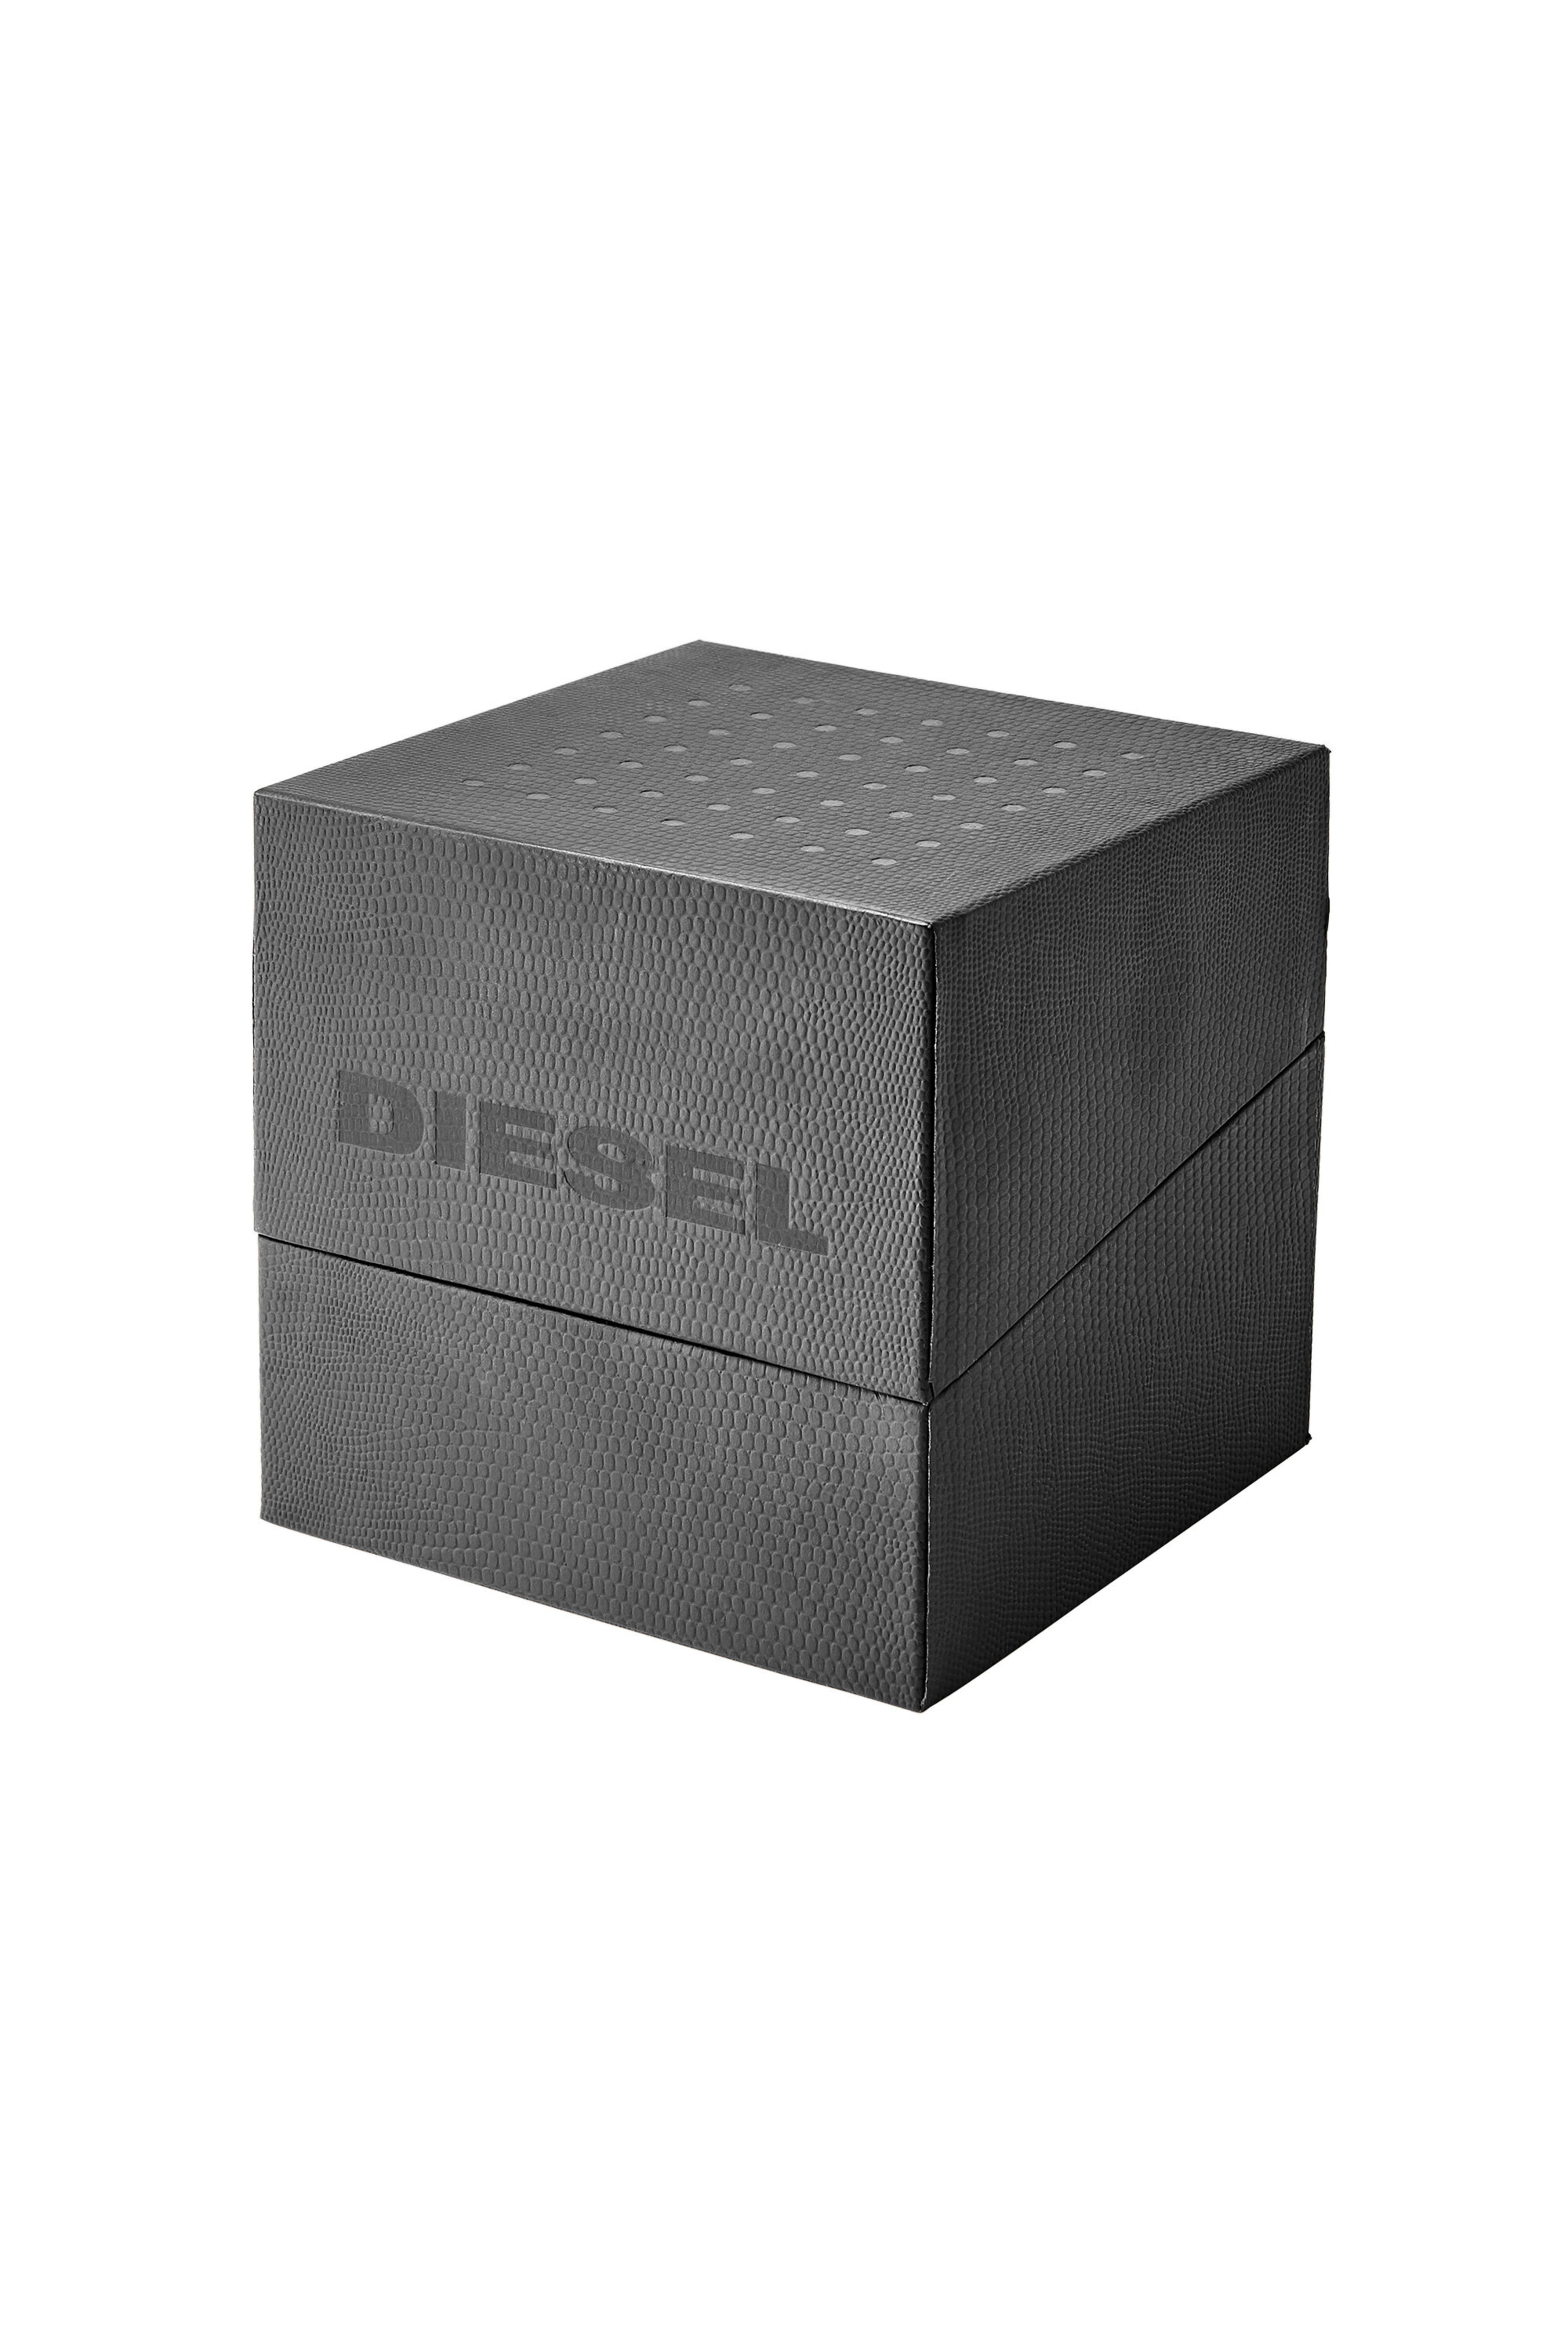 Diesel - DZ4524, Schwarz - Image 4